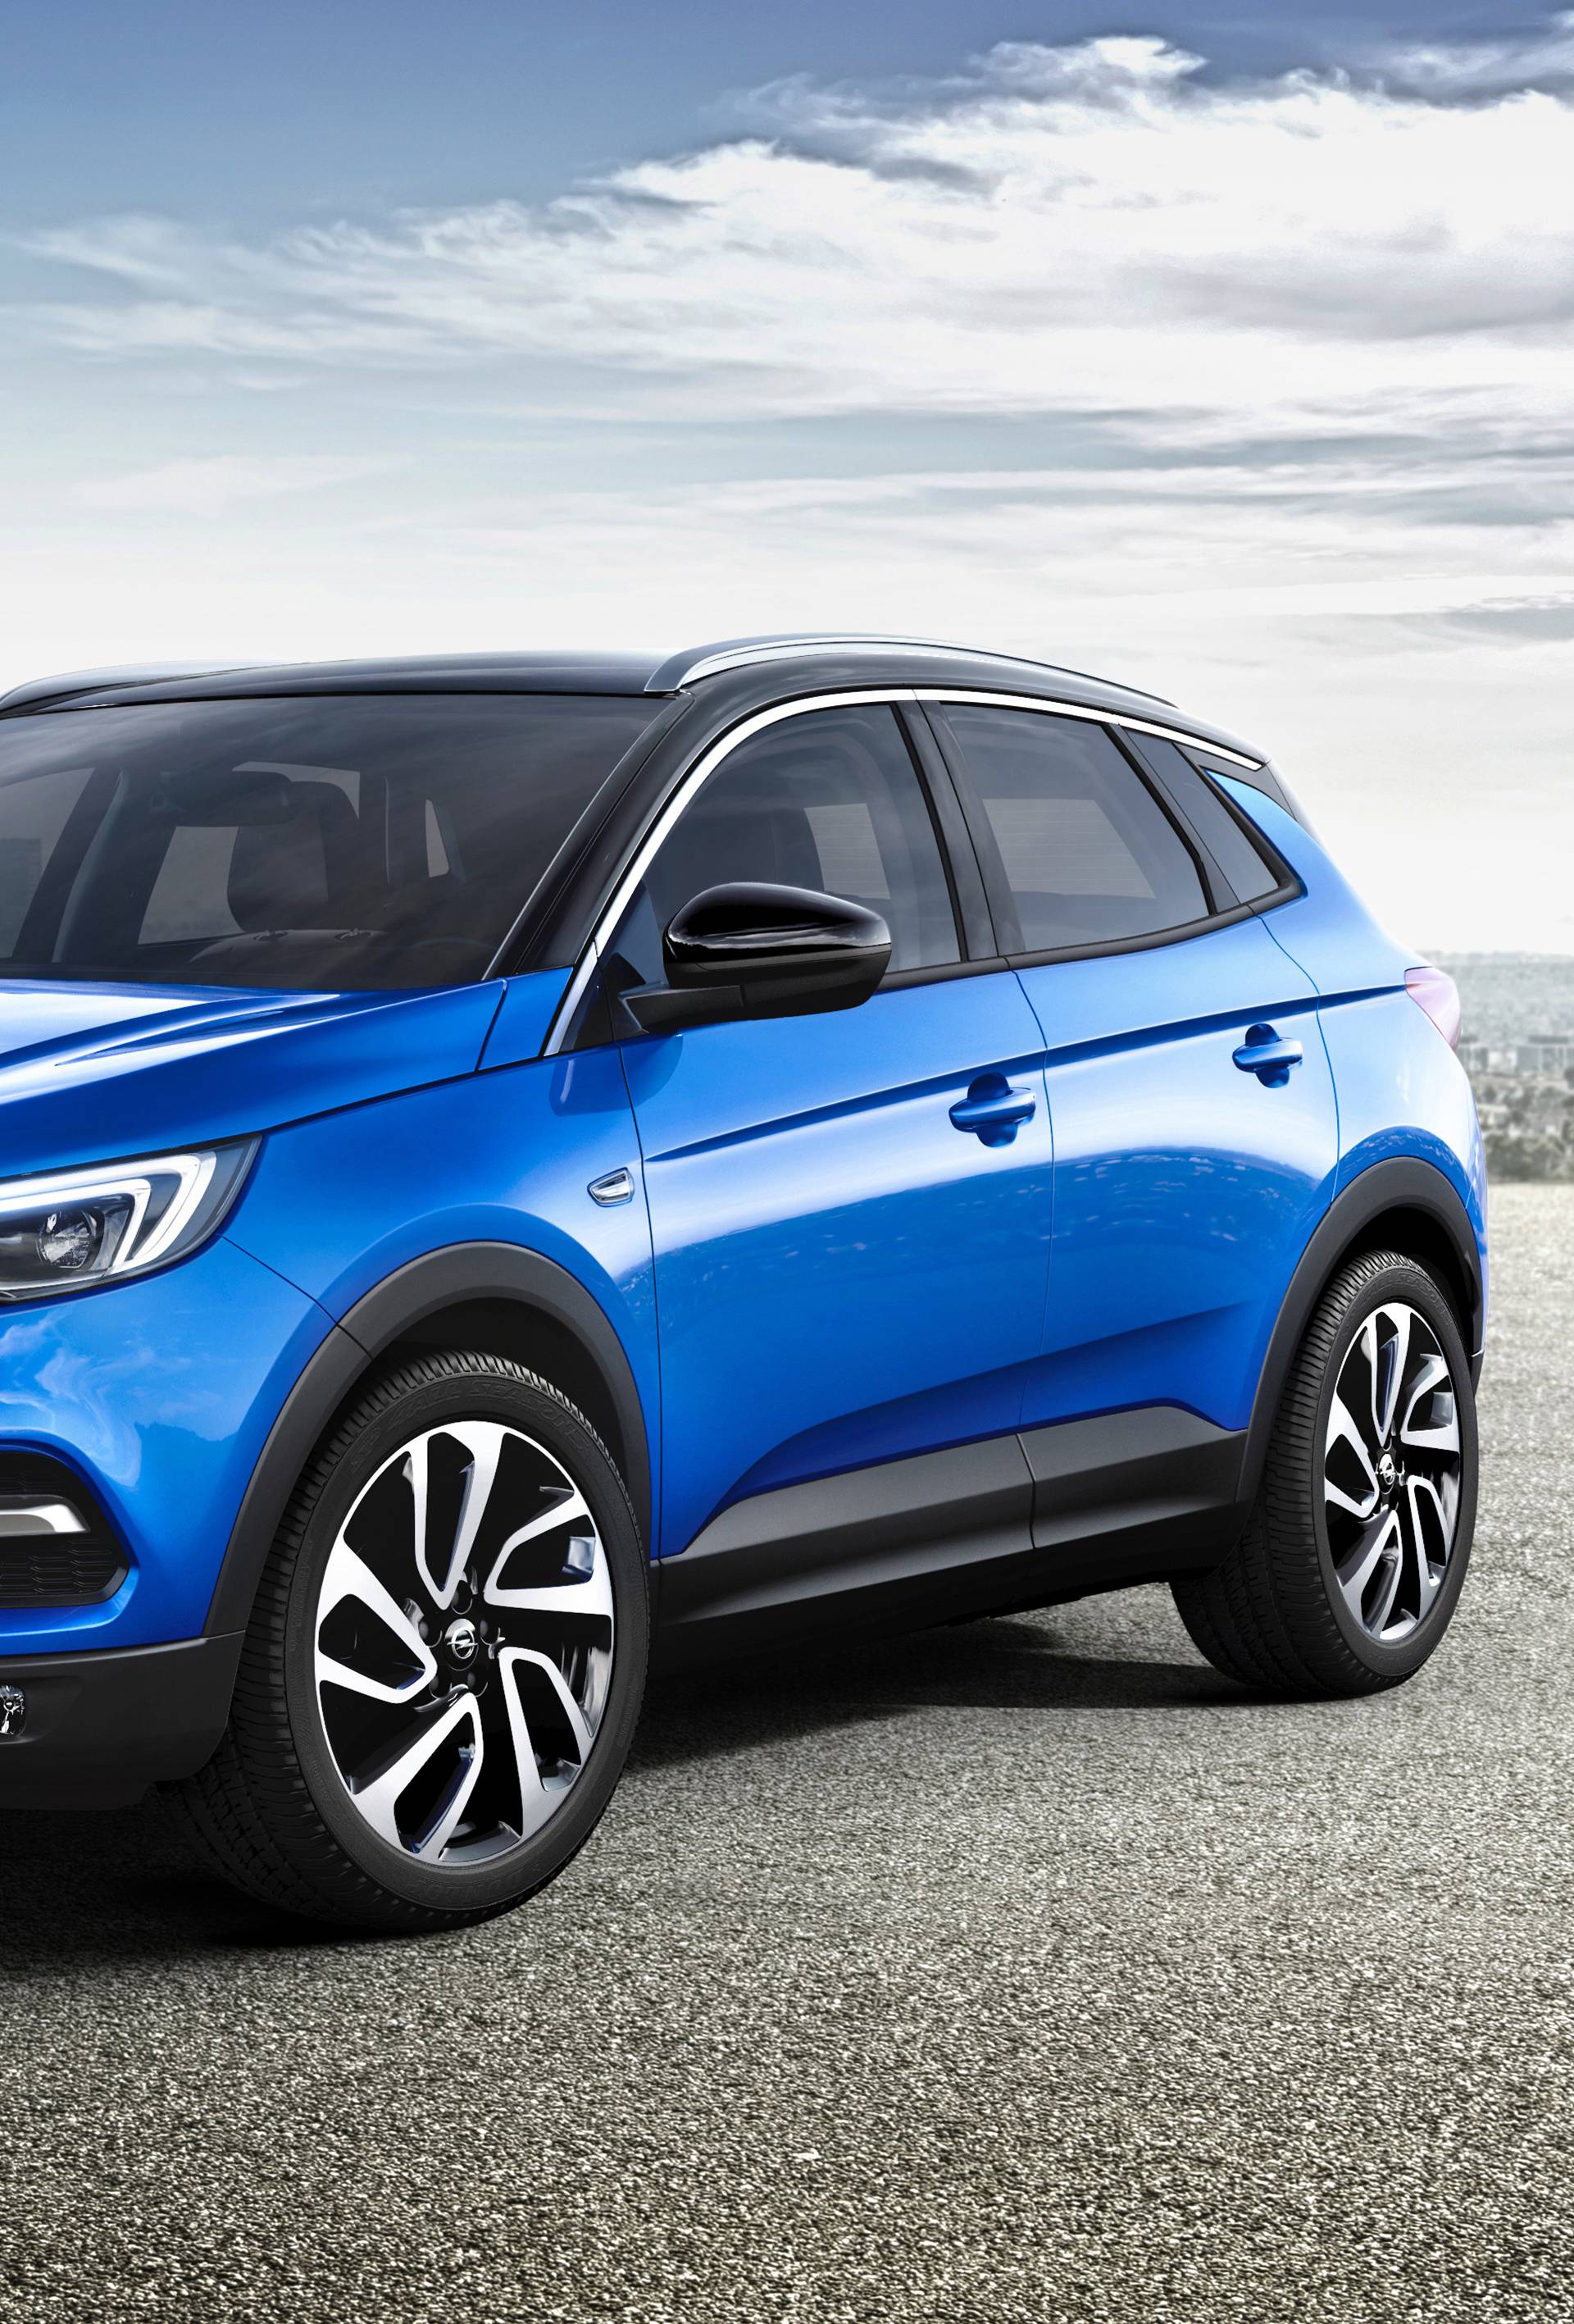 Dvojajčani blizanci: Zajednička SUV ofenziva Citroëna i Opela